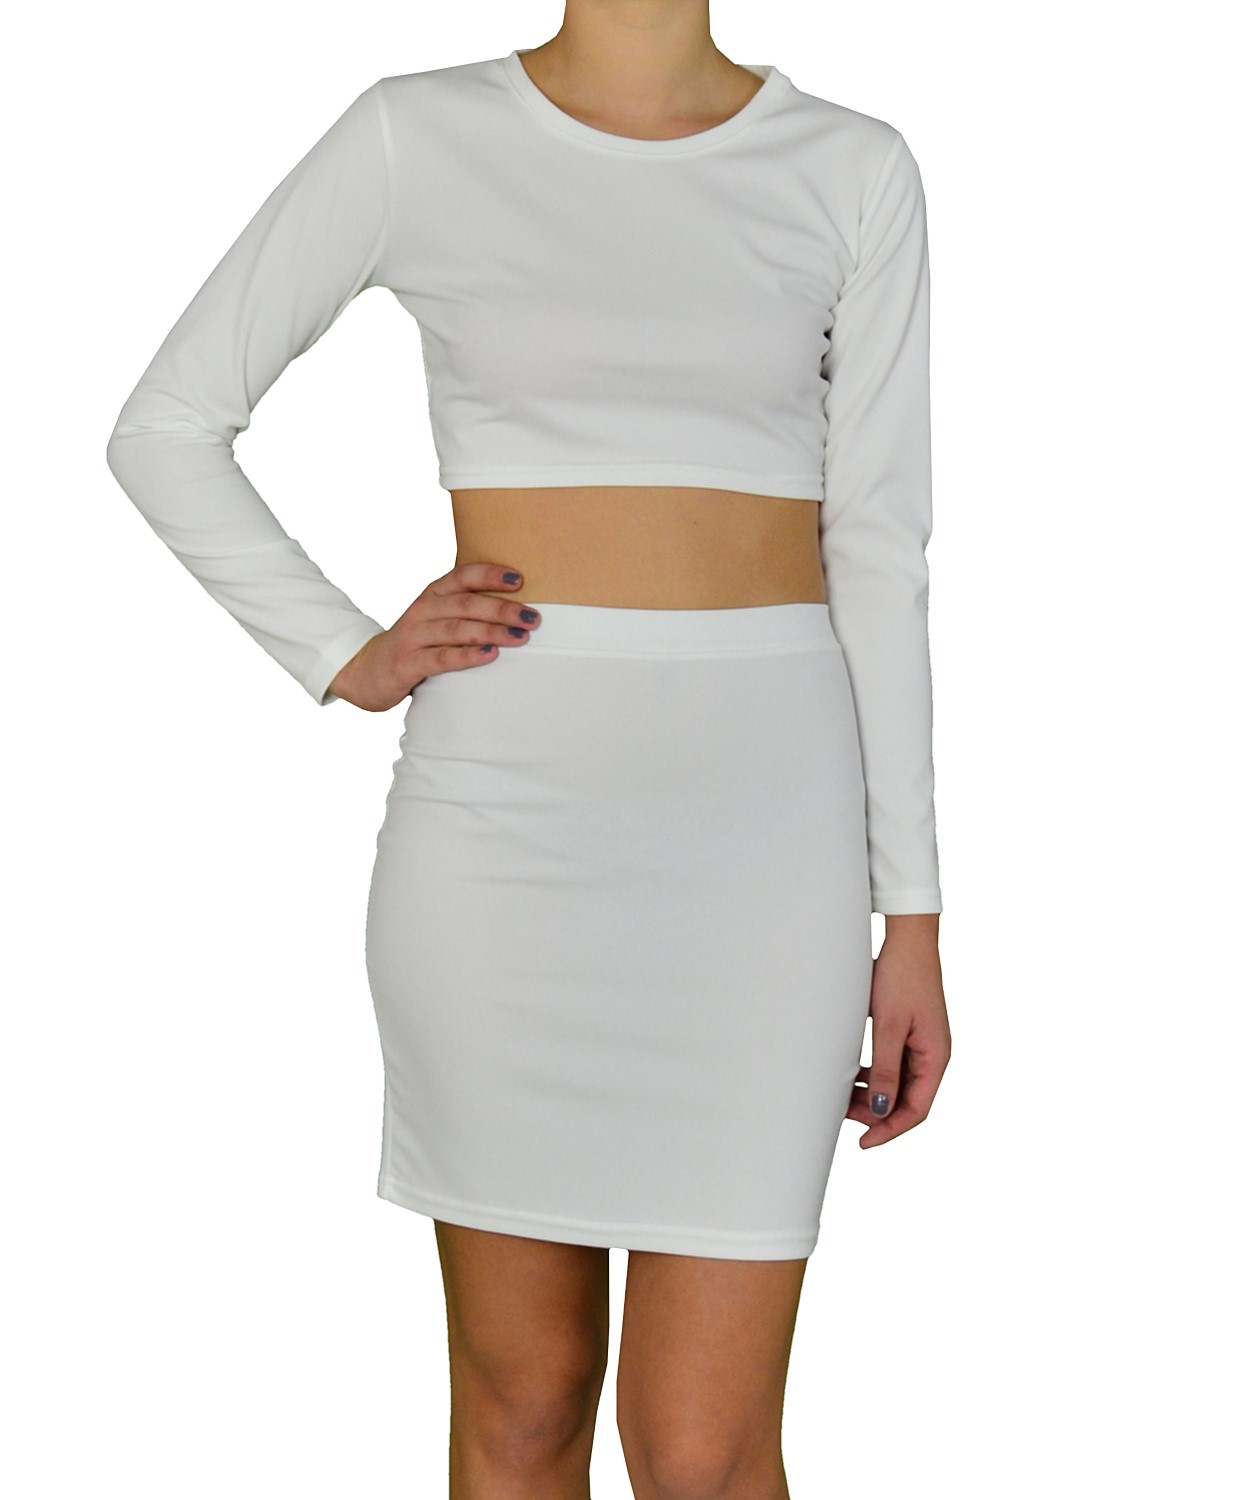 Γυναικείο σετ φούστα με τοπ λευκό 89632F